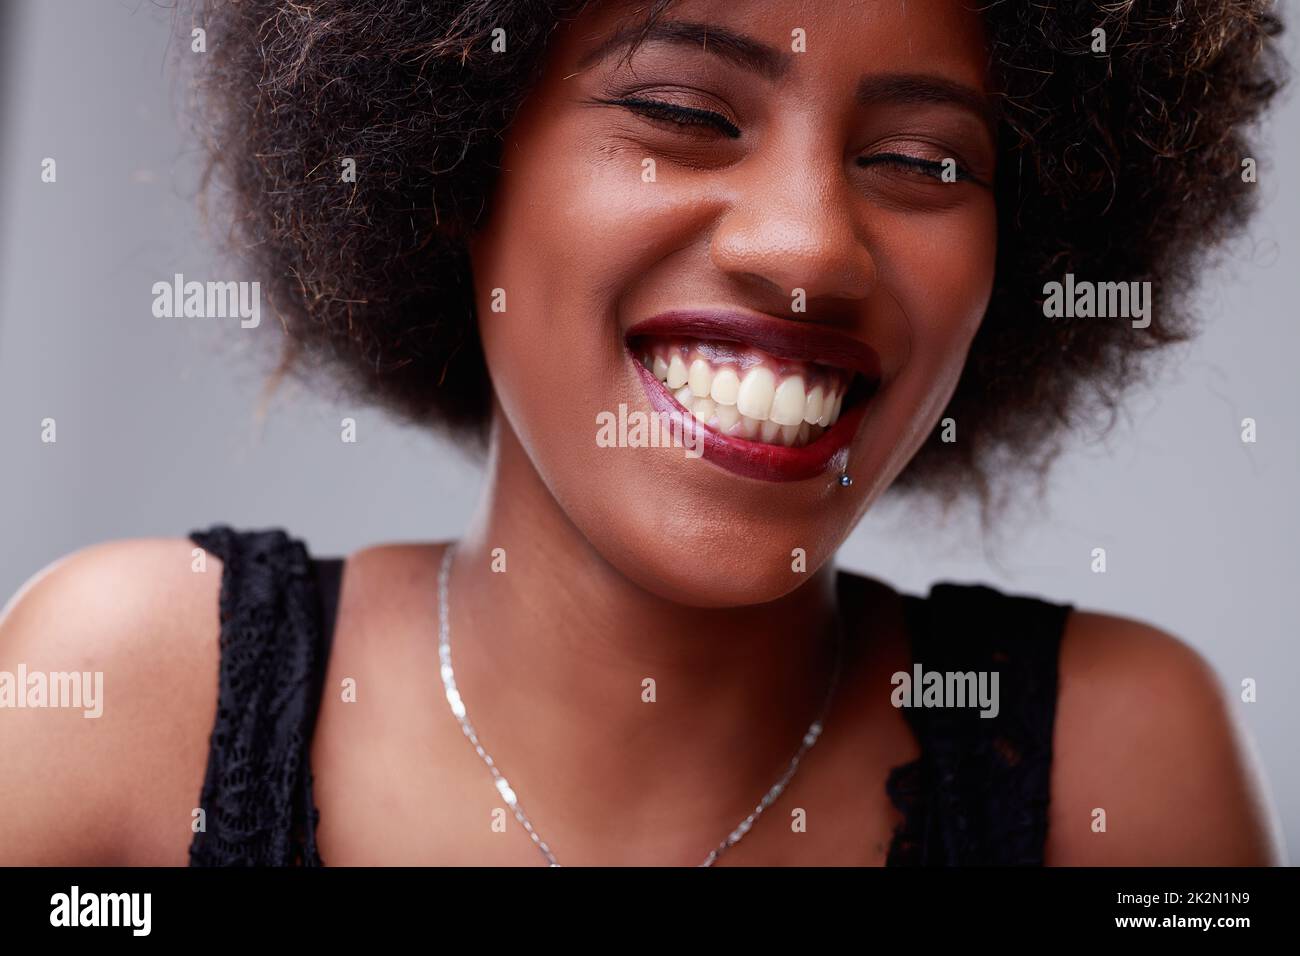 Bonne jeune femme noire avec un sourire radieux Banque D'Images